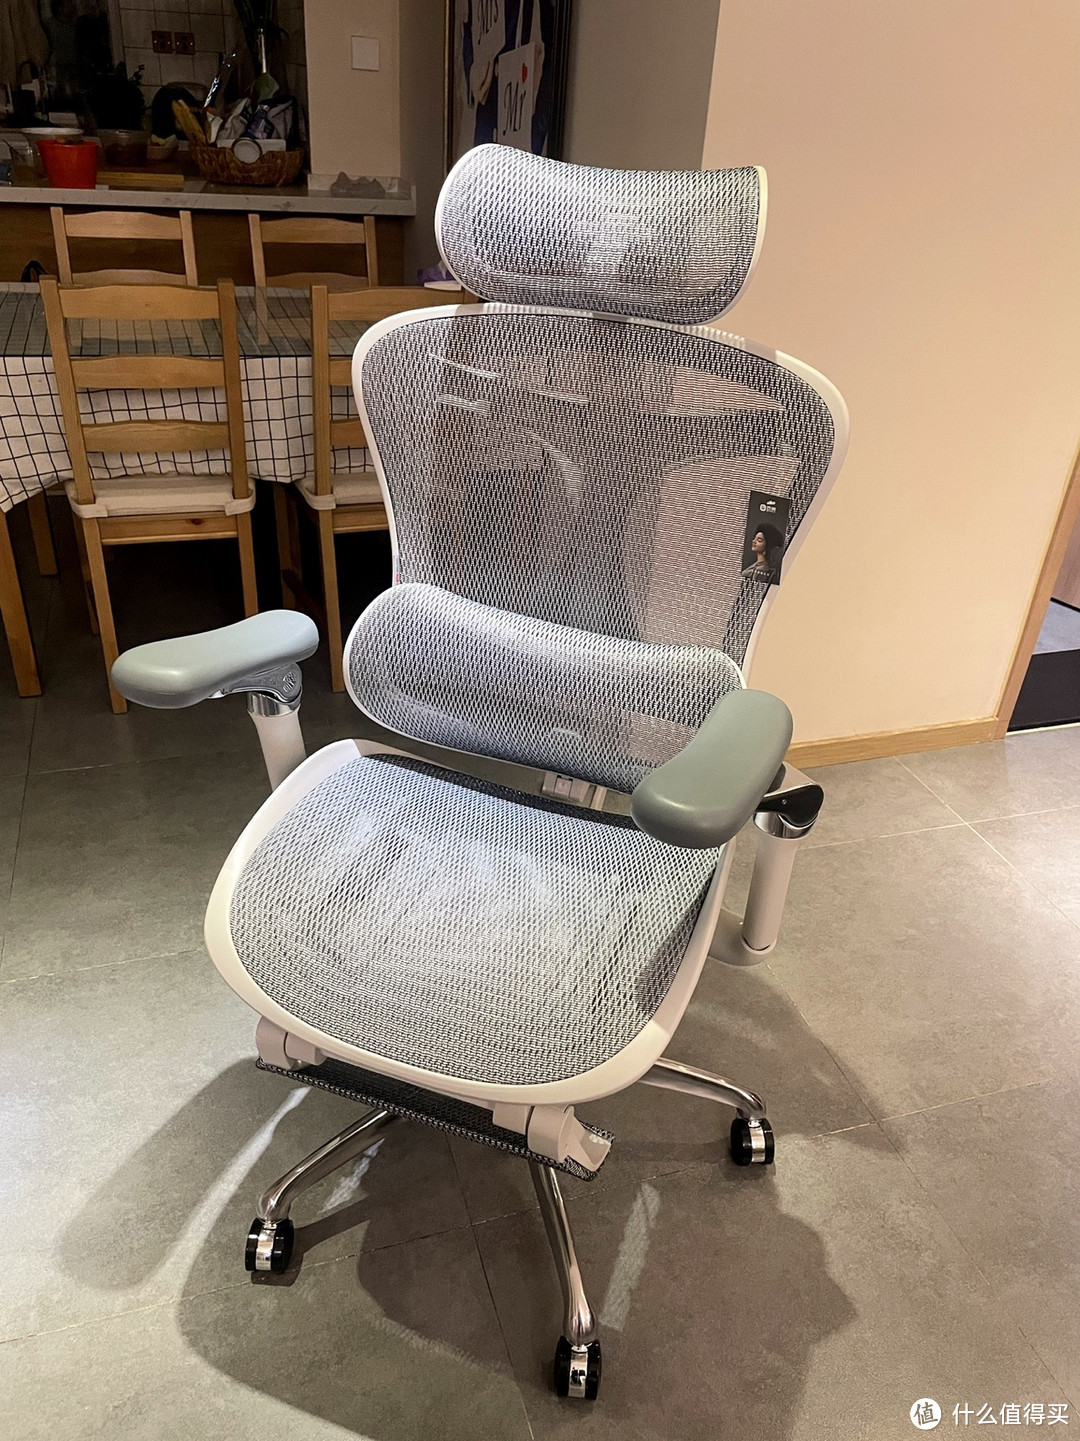 西昊公司推出了一款创新的人体工学椅，旨在提供舒适和健康的工作体验，并提升工作效率。